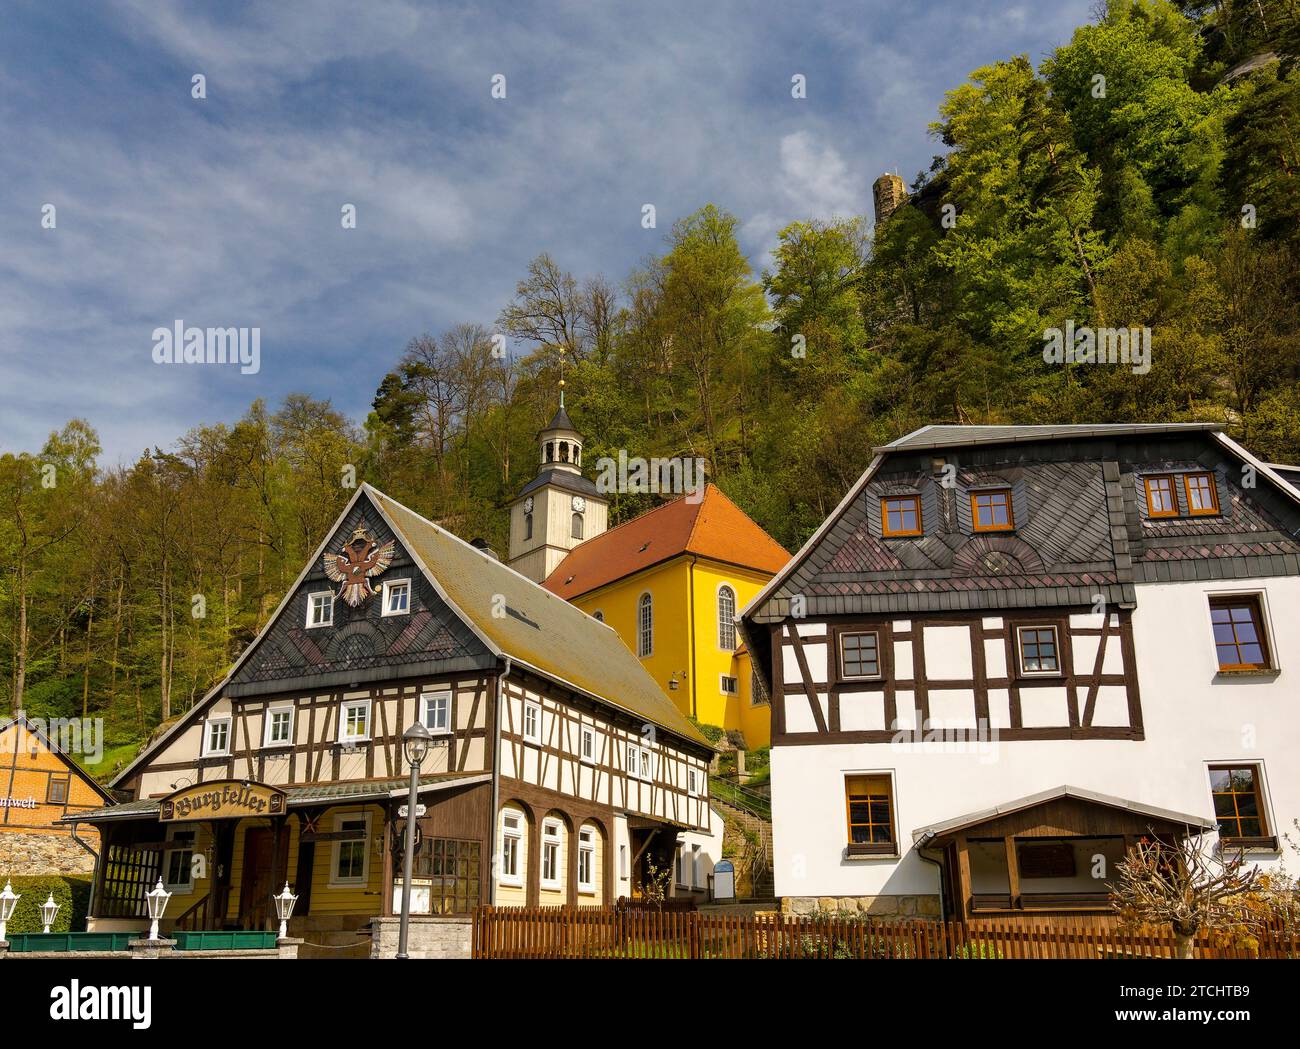 Casas de entramado de madera y pequeña iglesia de pueblo en una ladera, Umgebindehaeuser, Oybin, montañas de Zittau, Sajonia, Alemania Foto de stock